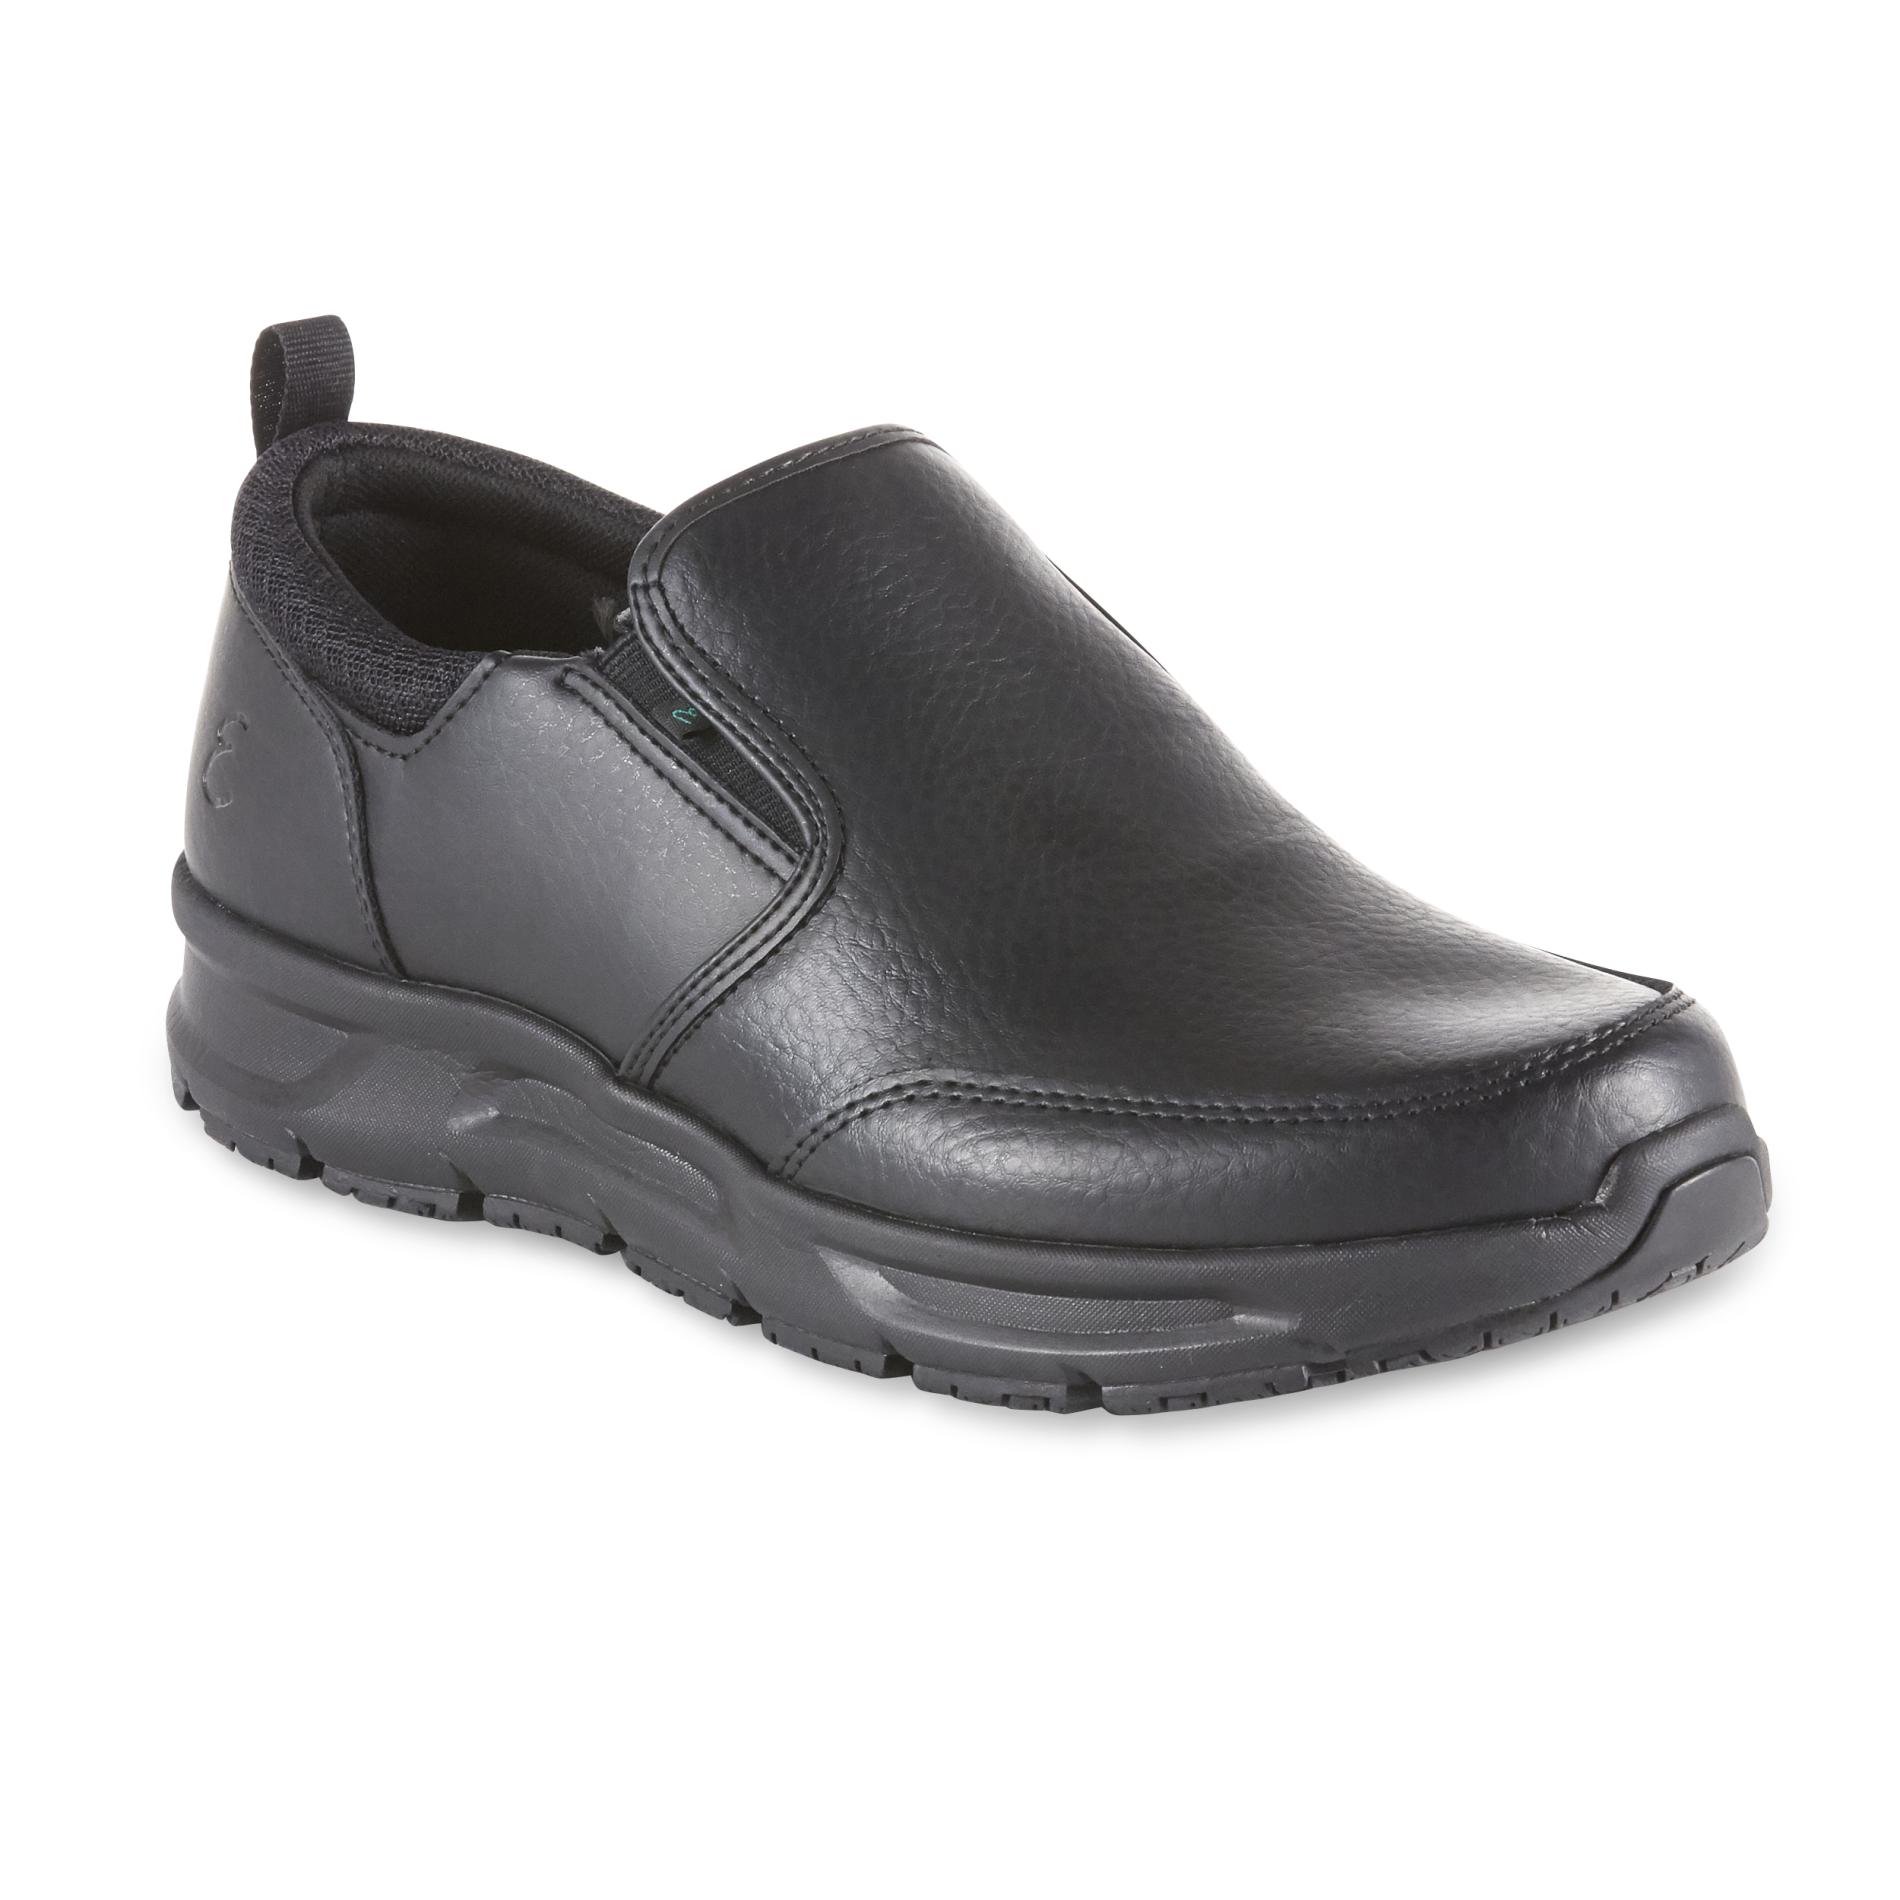 Emeril's Men's Quarter Work Shoe - Black